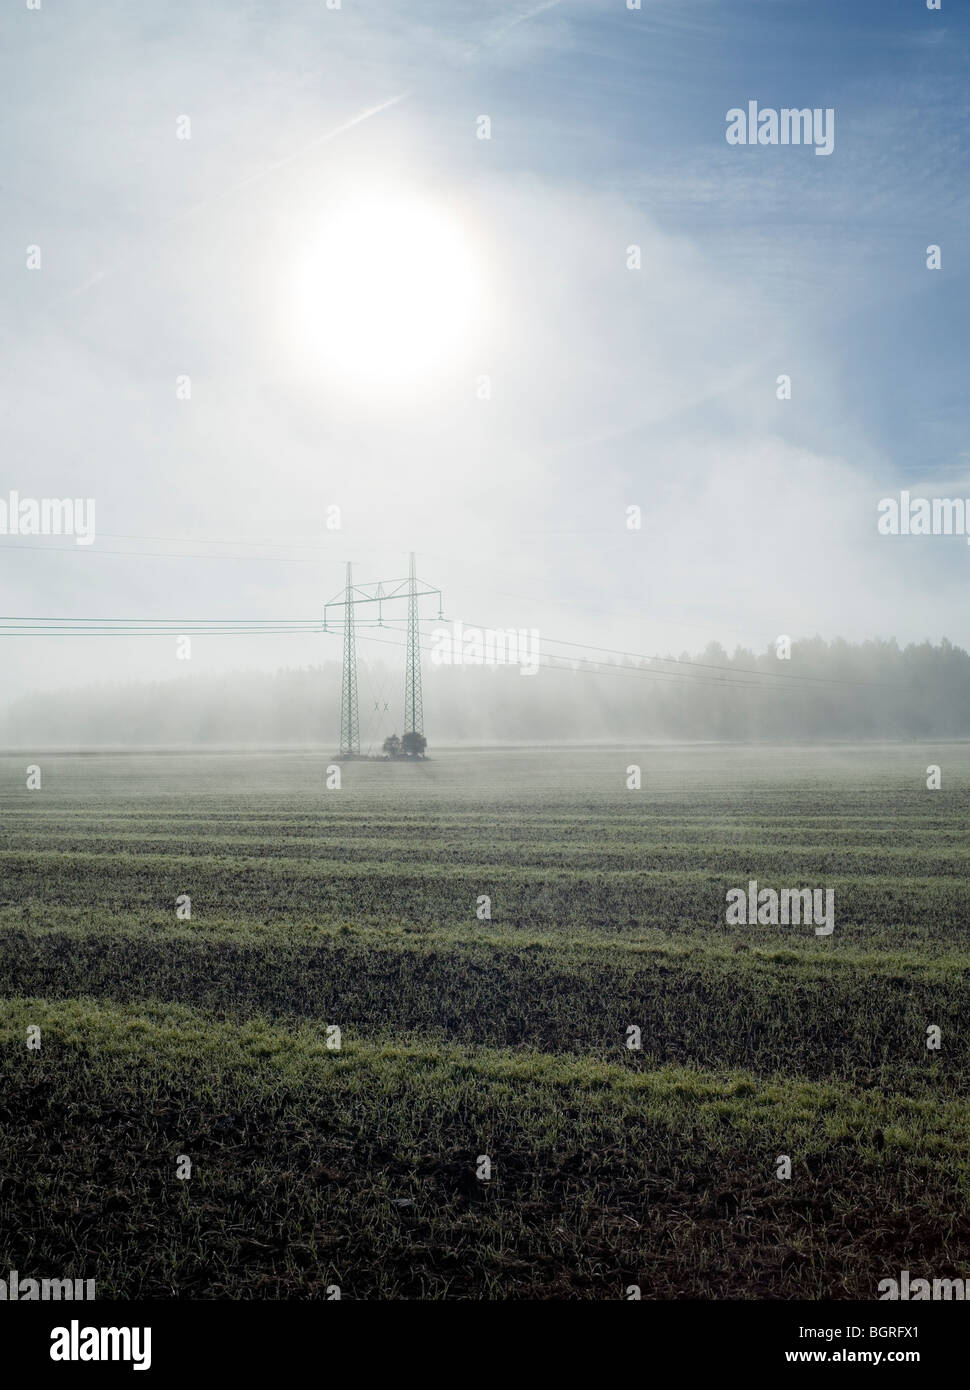 Des lignes électriques au-dessus d'une zone de brouillard, la Suède. Banque D'Images